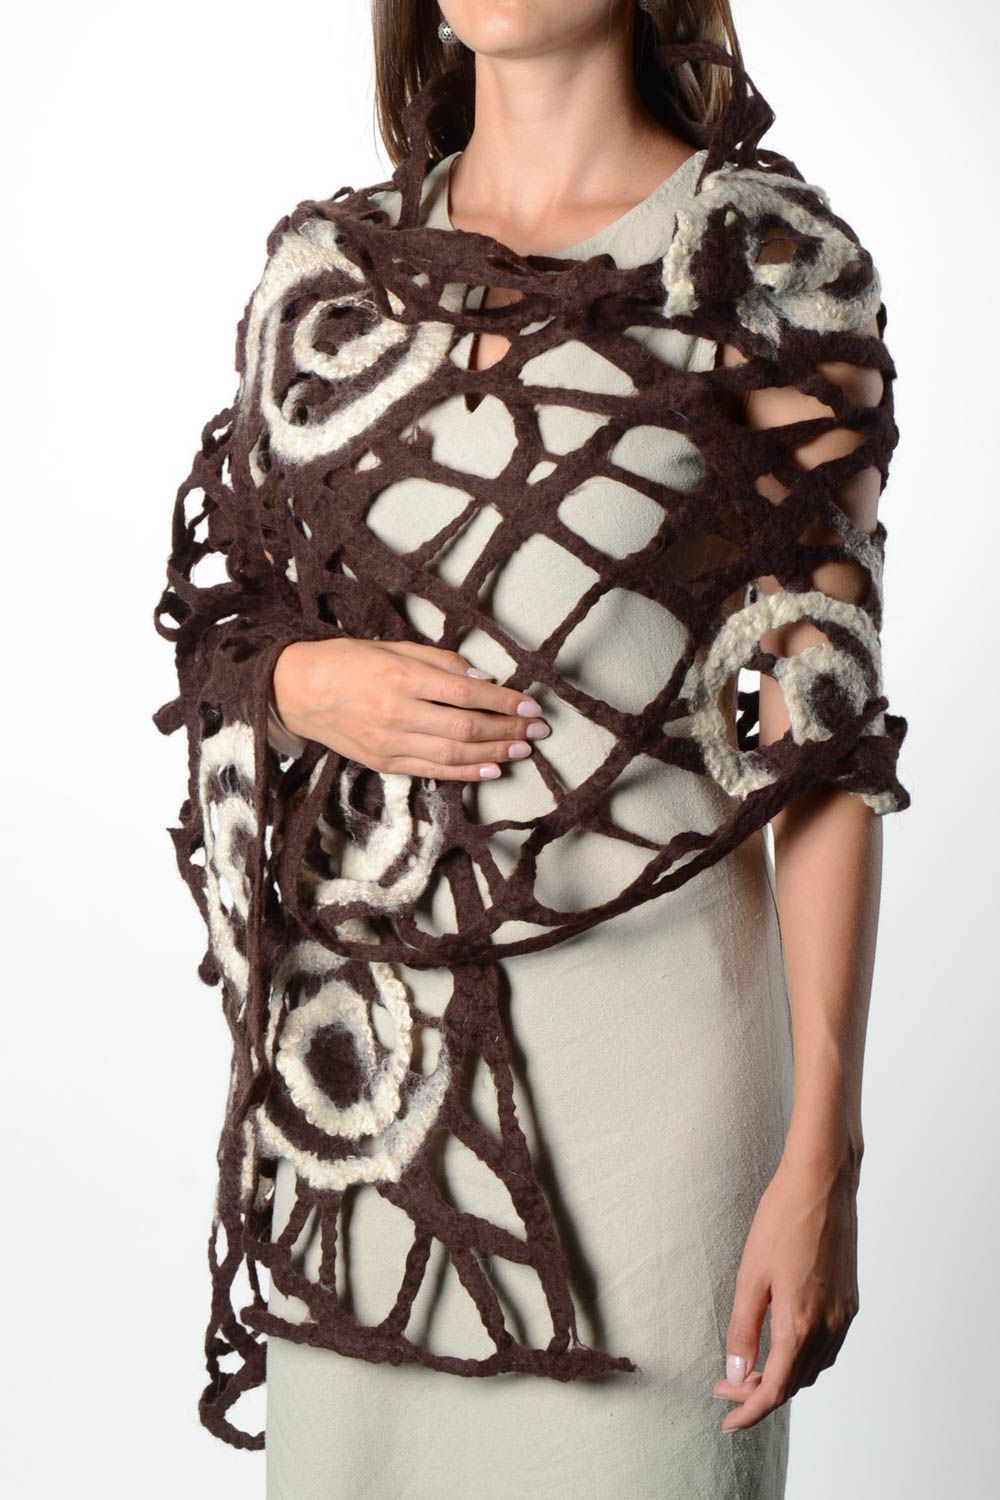 Женский шарф палантин ручной работы валяный палантин из шерсти коричневый фото 1